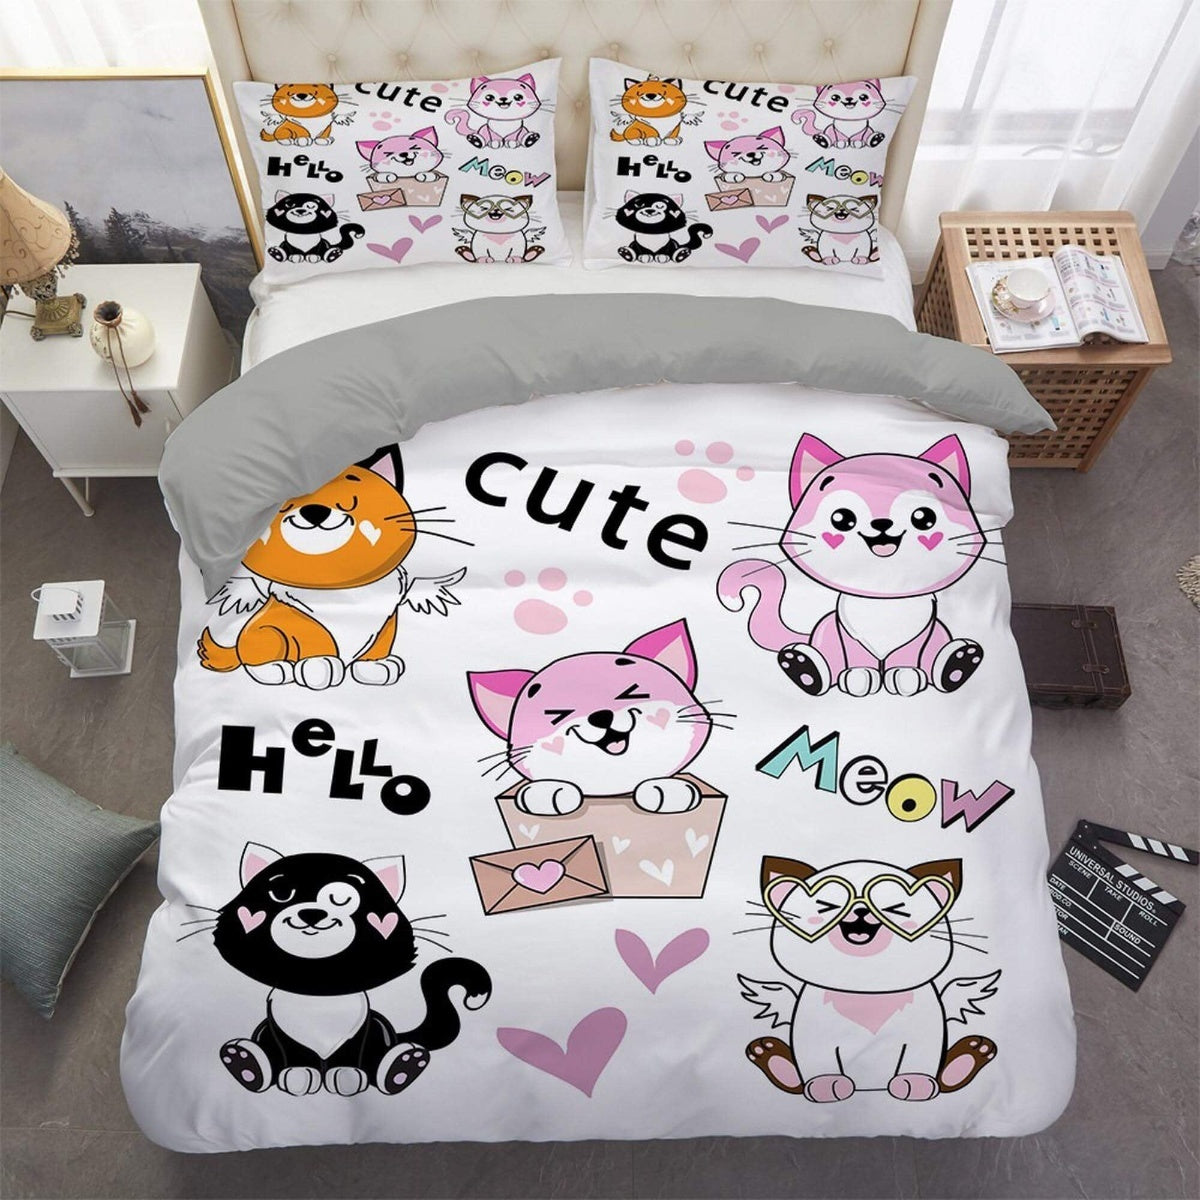 daintyduvet Cute funny cat bedding, toddler bedding, kids duvet cover set, gift for cat lovers, baby bedding, baby shower gift